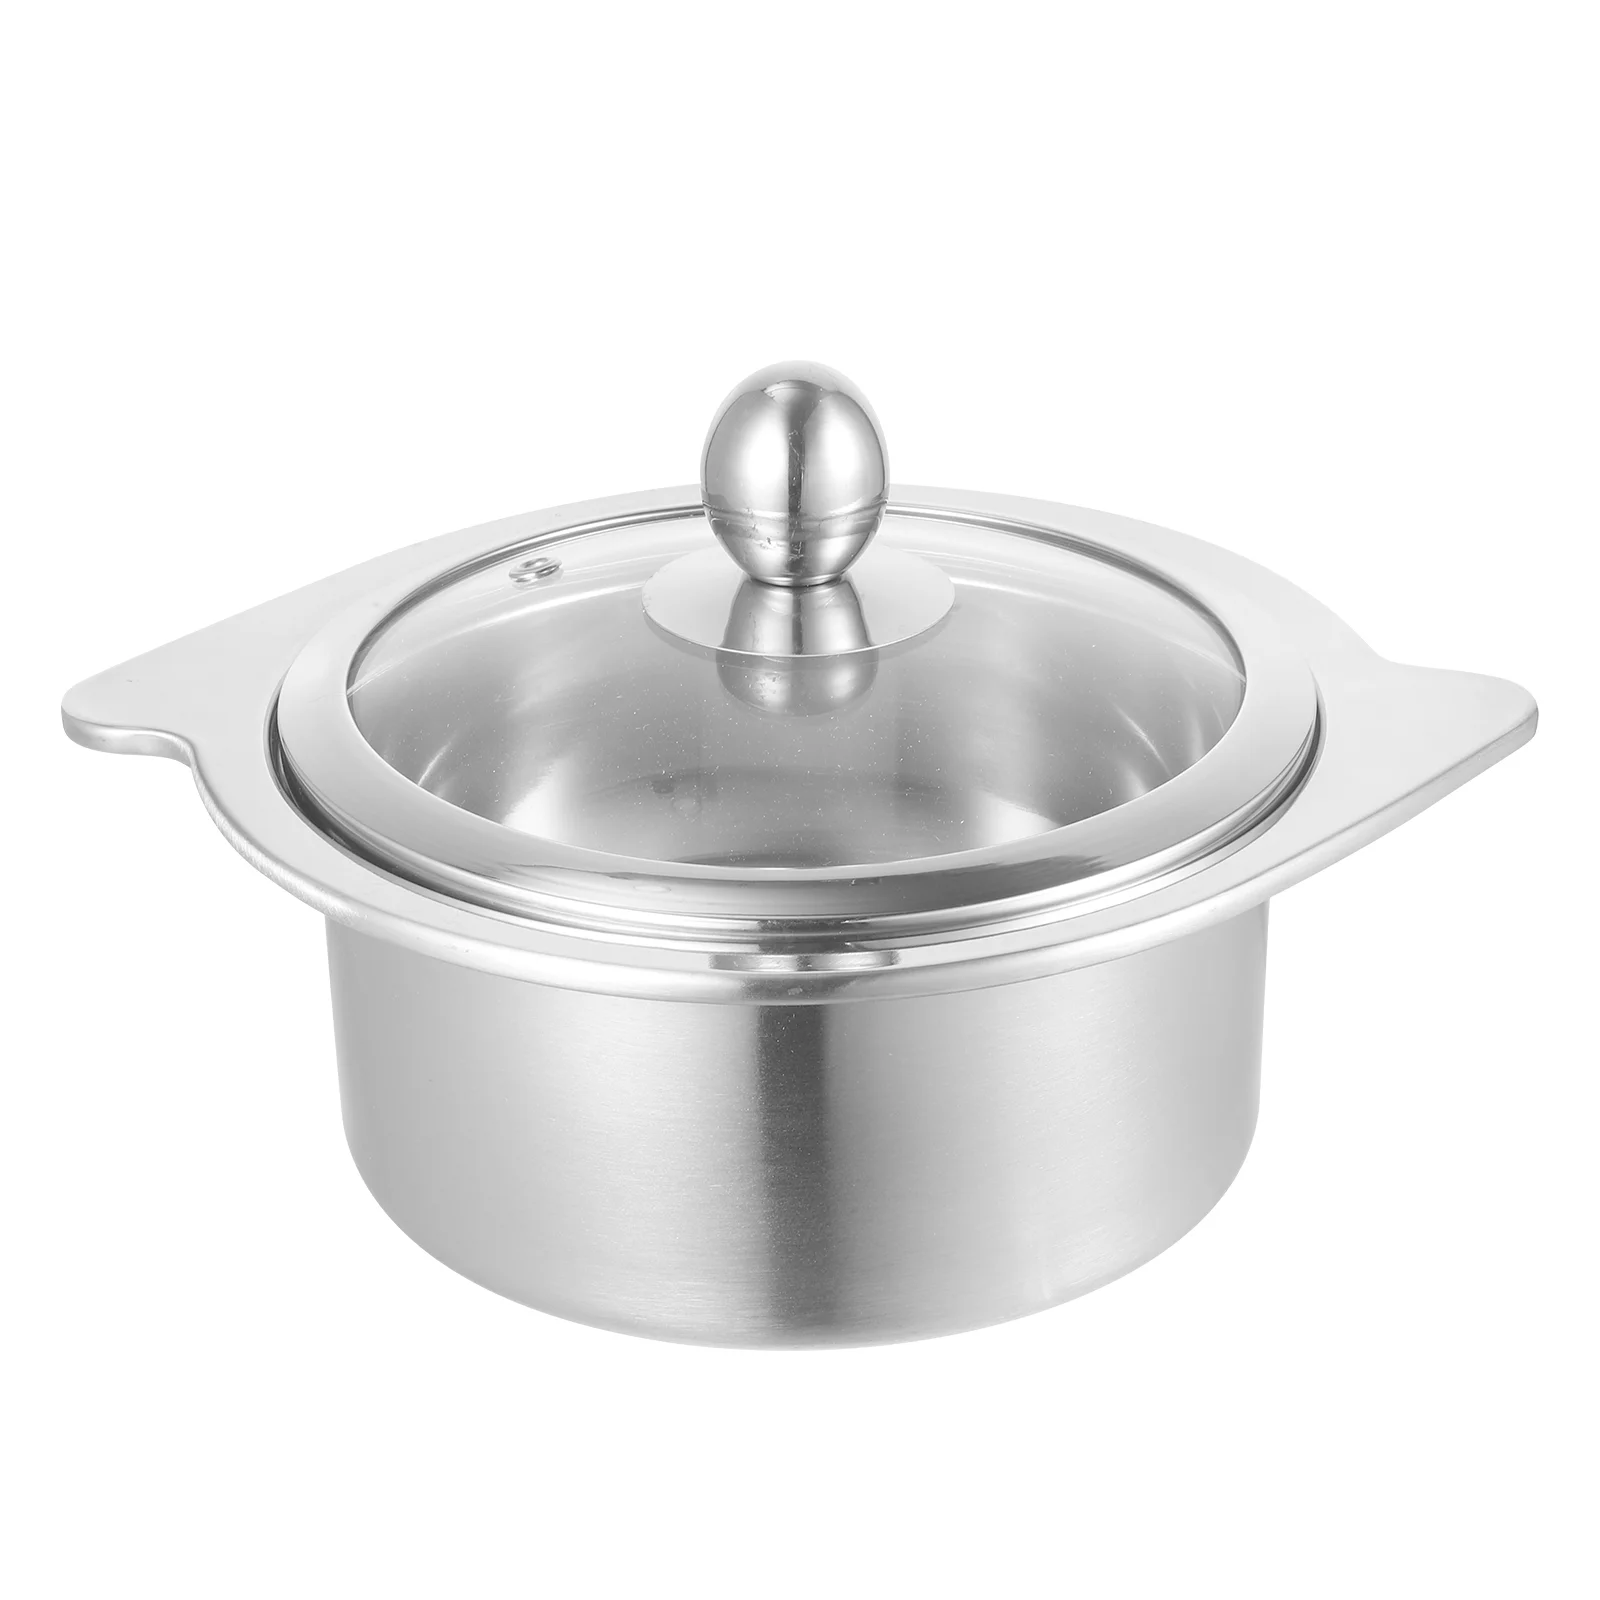 

Stainless Steel Small Hot Pot Soup Cooking Pots Lids Home Ramen Cooker Stockpot Cookware